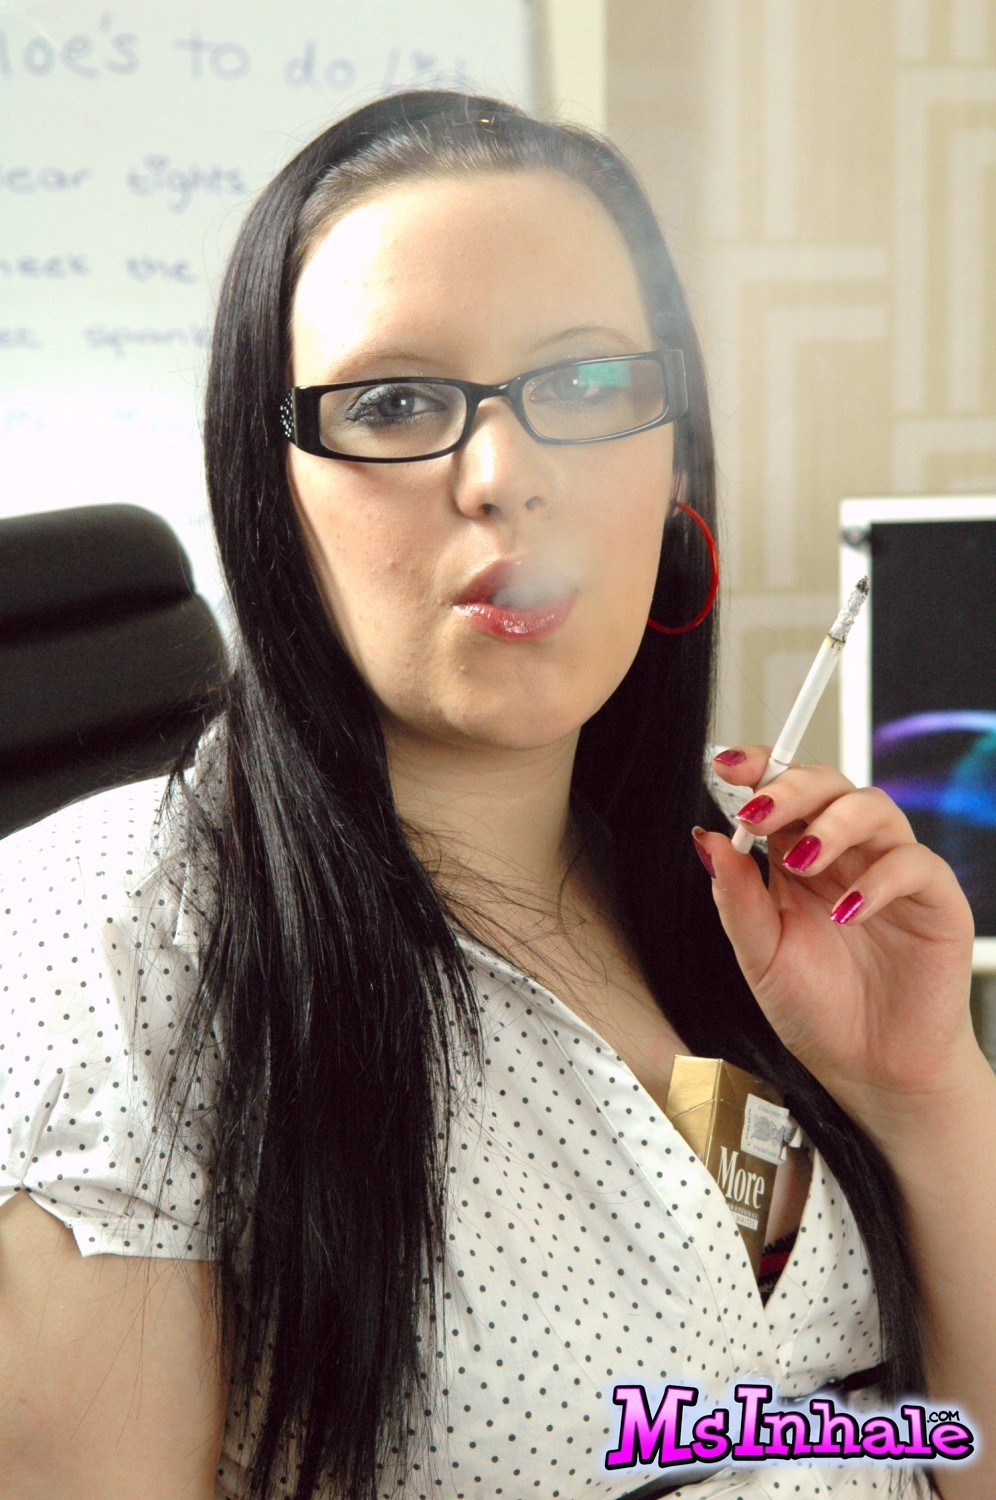 Teen Sekretärin mit Brille raucht eine mehr 120 Zigarette bei der Arbeit
 #70269211